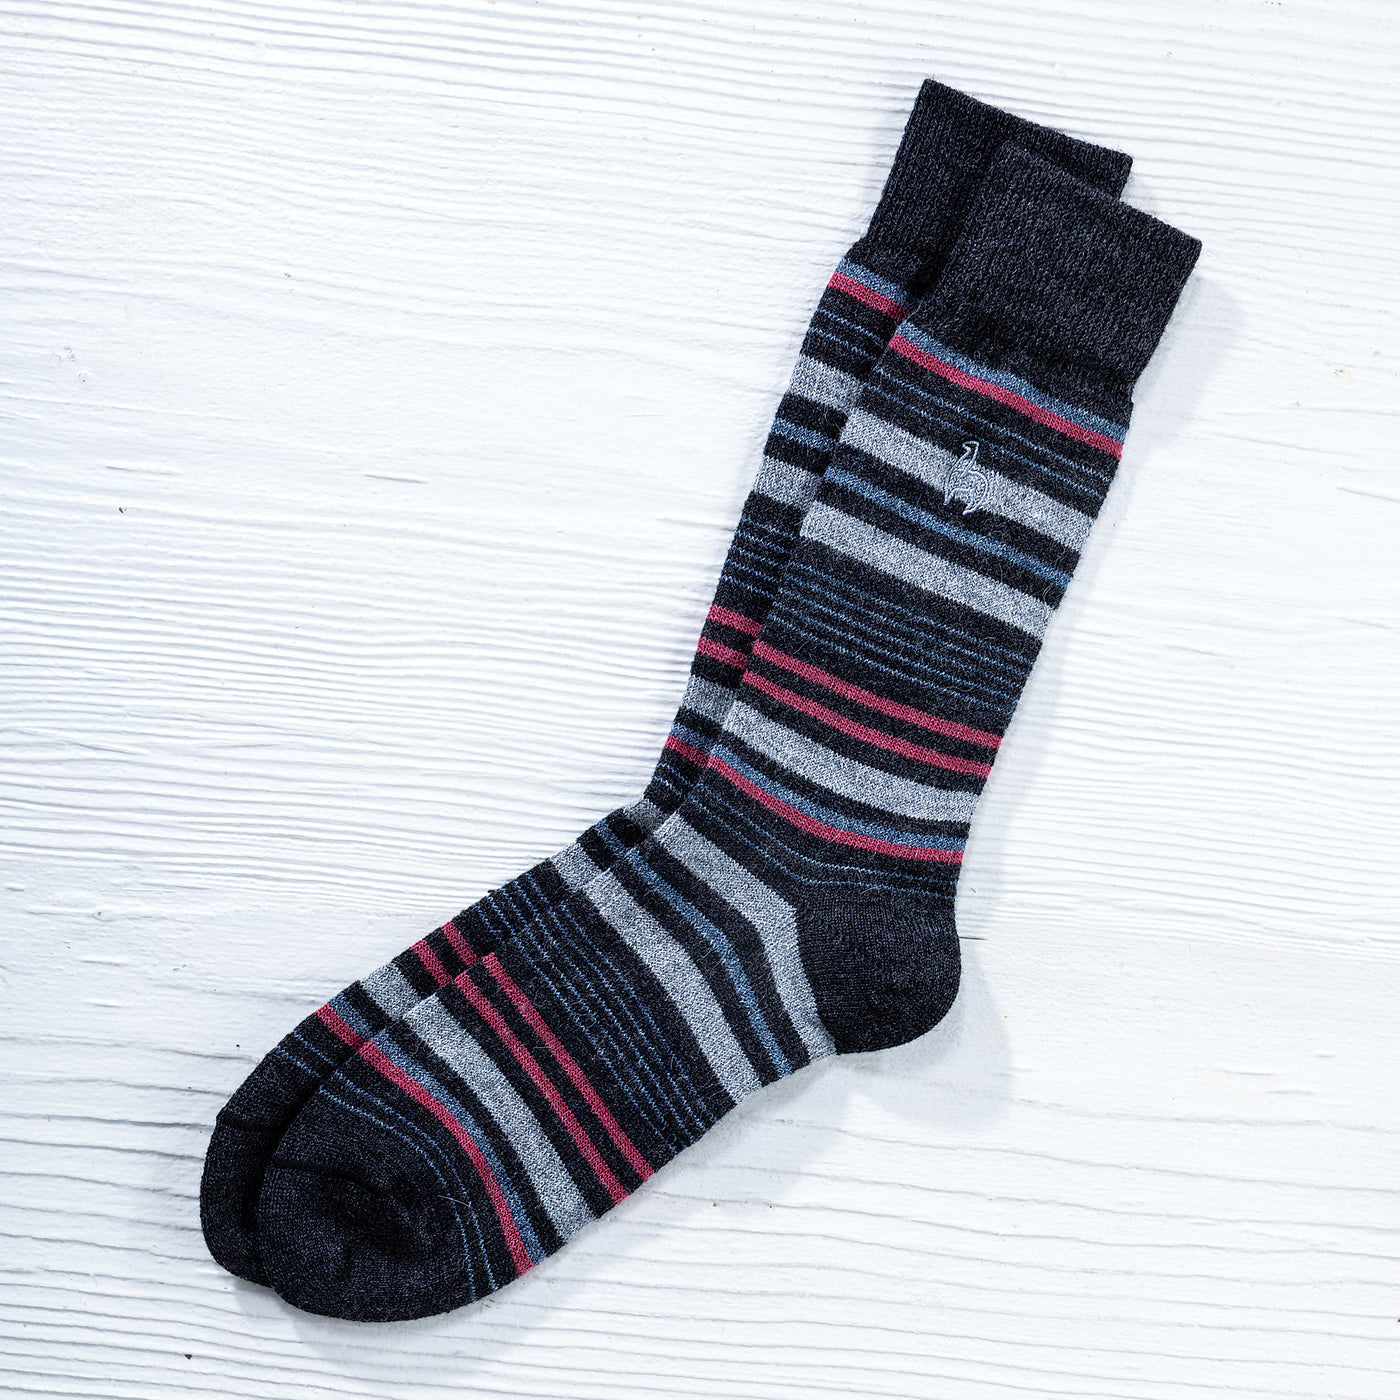 Cozy Pink & Grey Striped Alpaca Socks